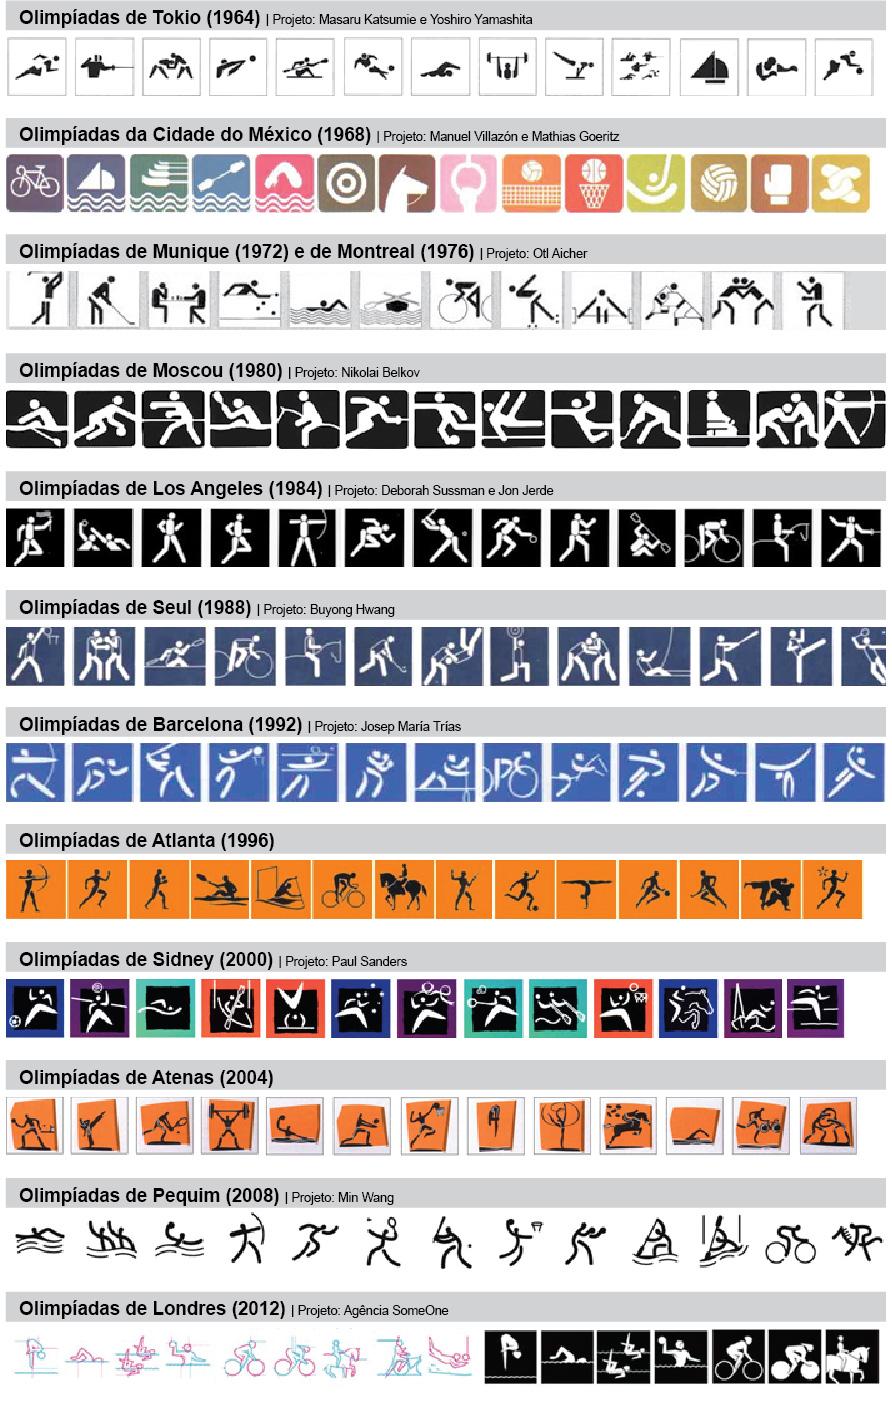 5 Figura 1: Pictogramas utilizados nas Olimpíadas de